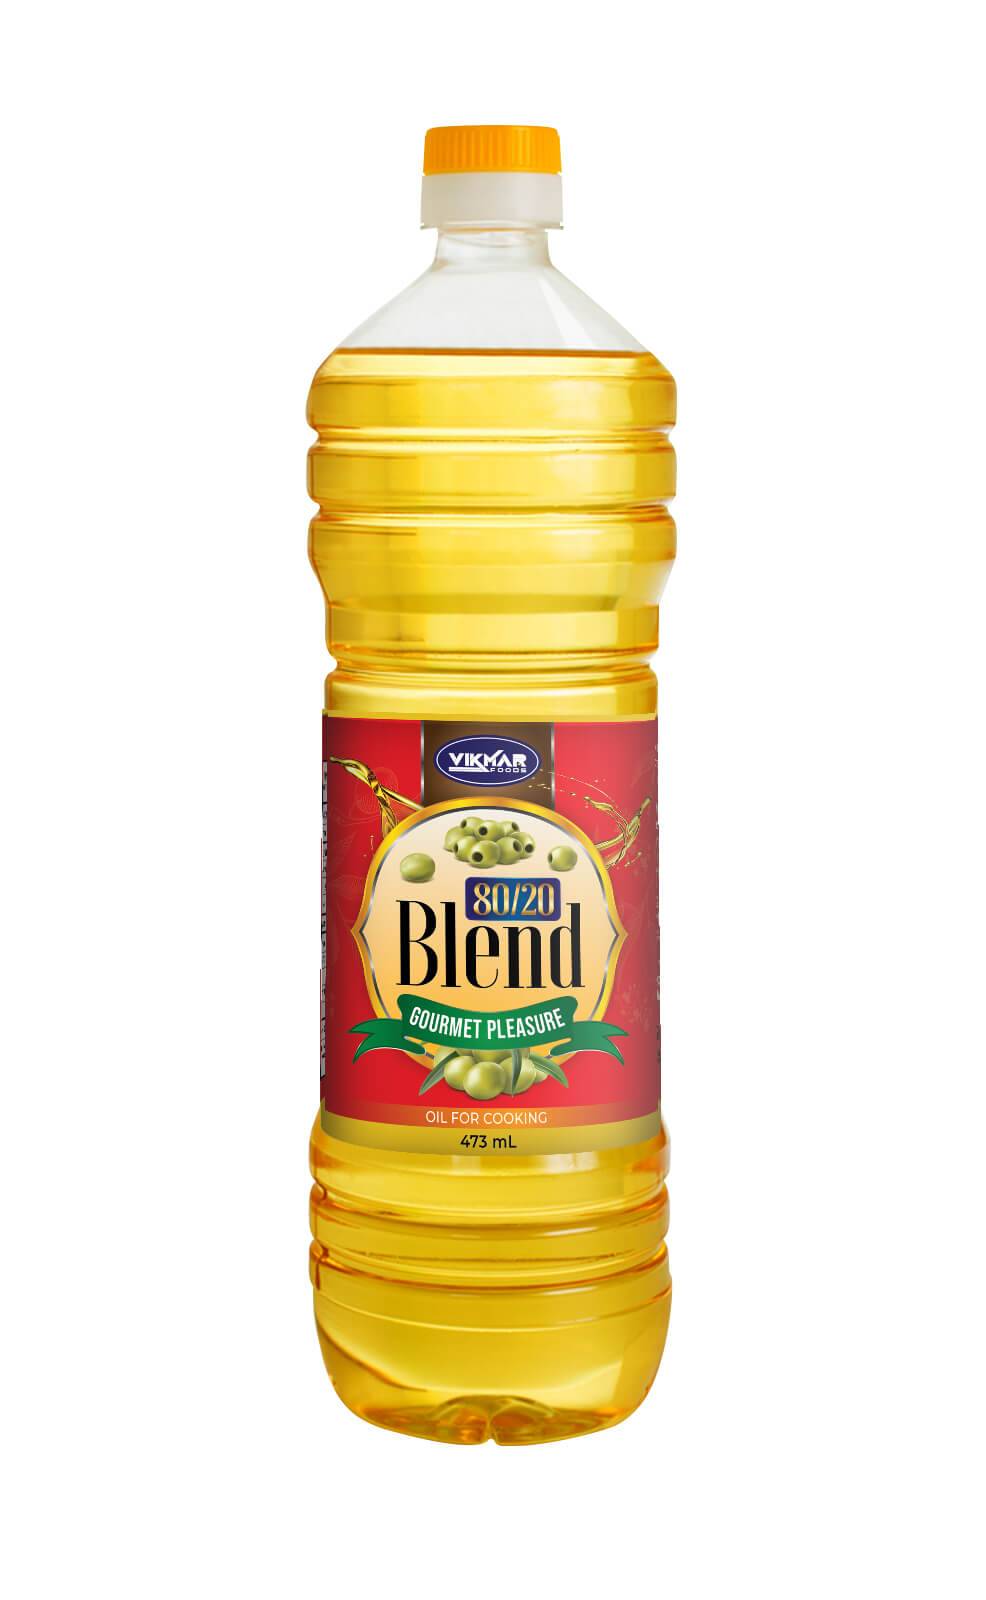 80/20 blend oil- 473ml